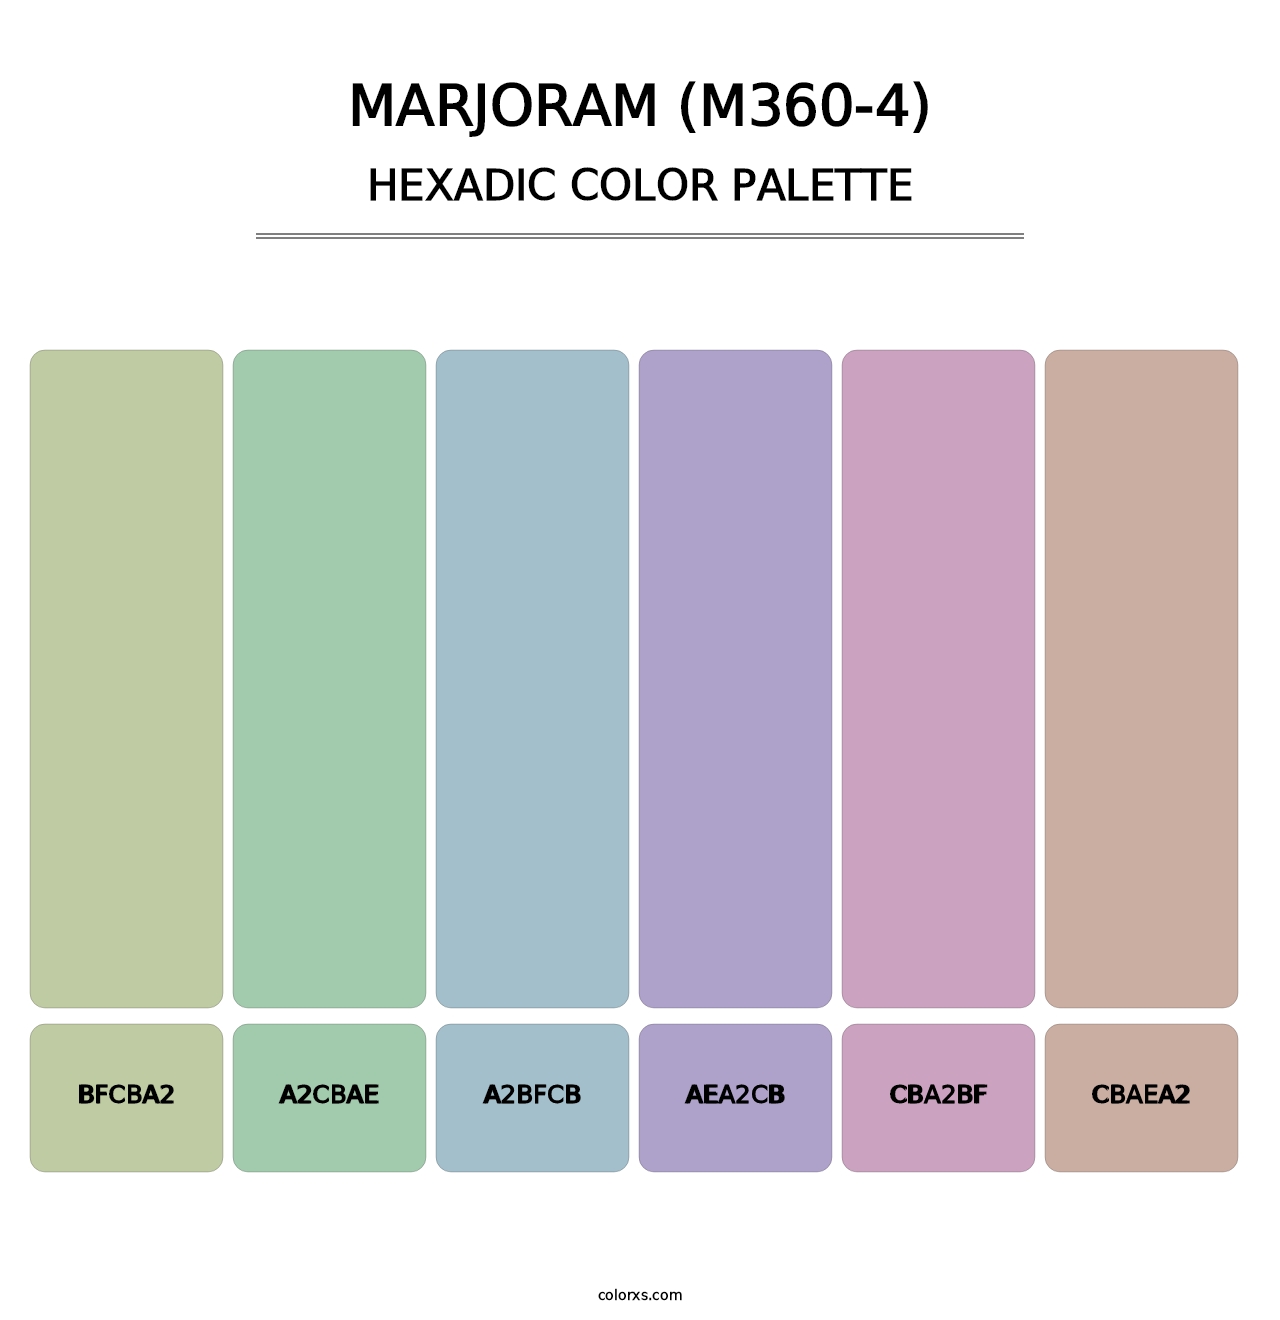 Marjoram (M360-4) - Hexadic Color Palette